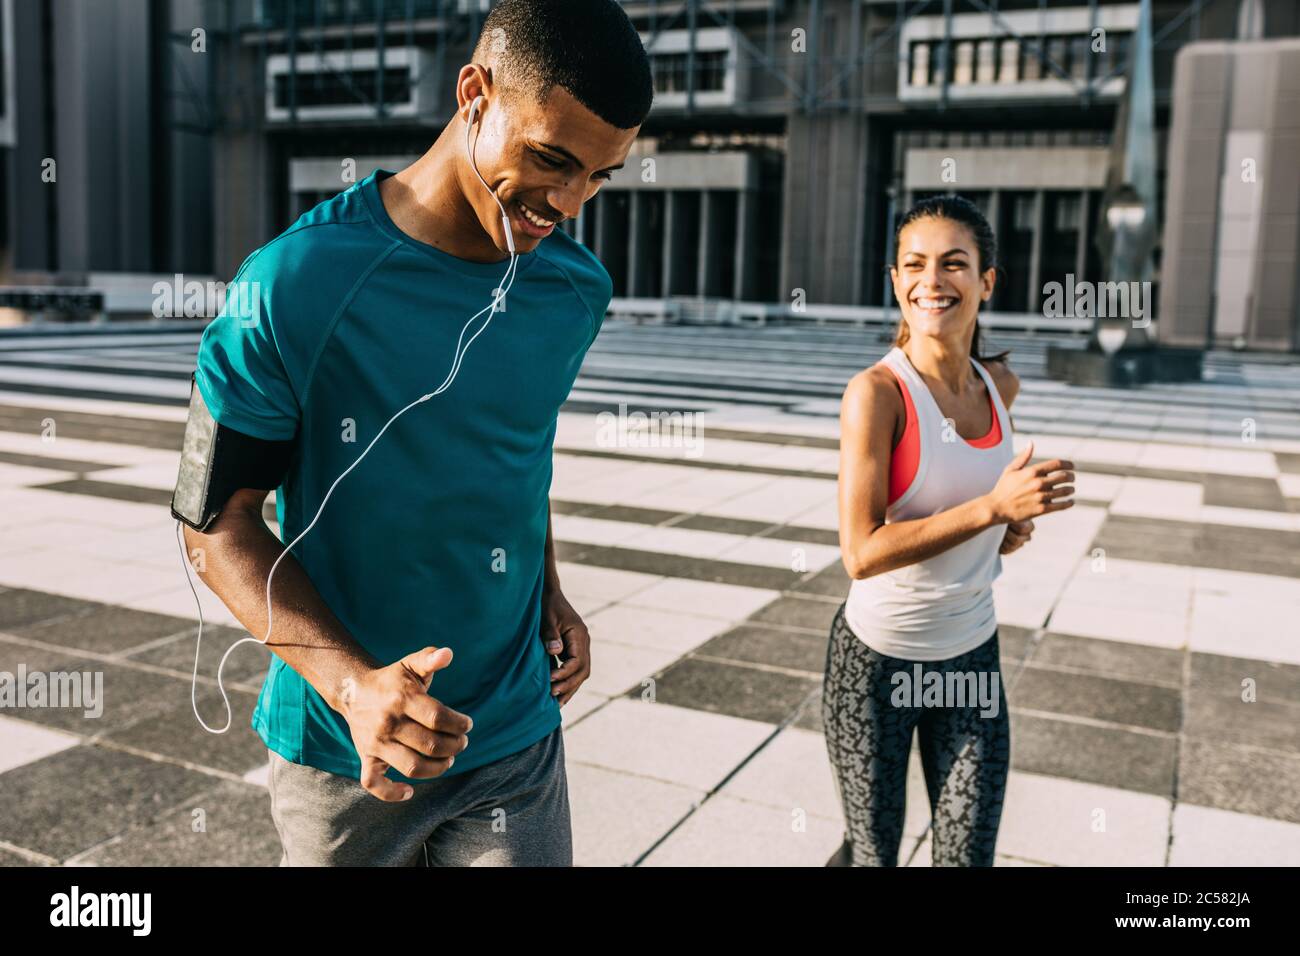 Sorridente uomo e donna in una corsa mattutina. Due persone in abbigliamento sportivo che si allenano insieme in città. Foto Stock